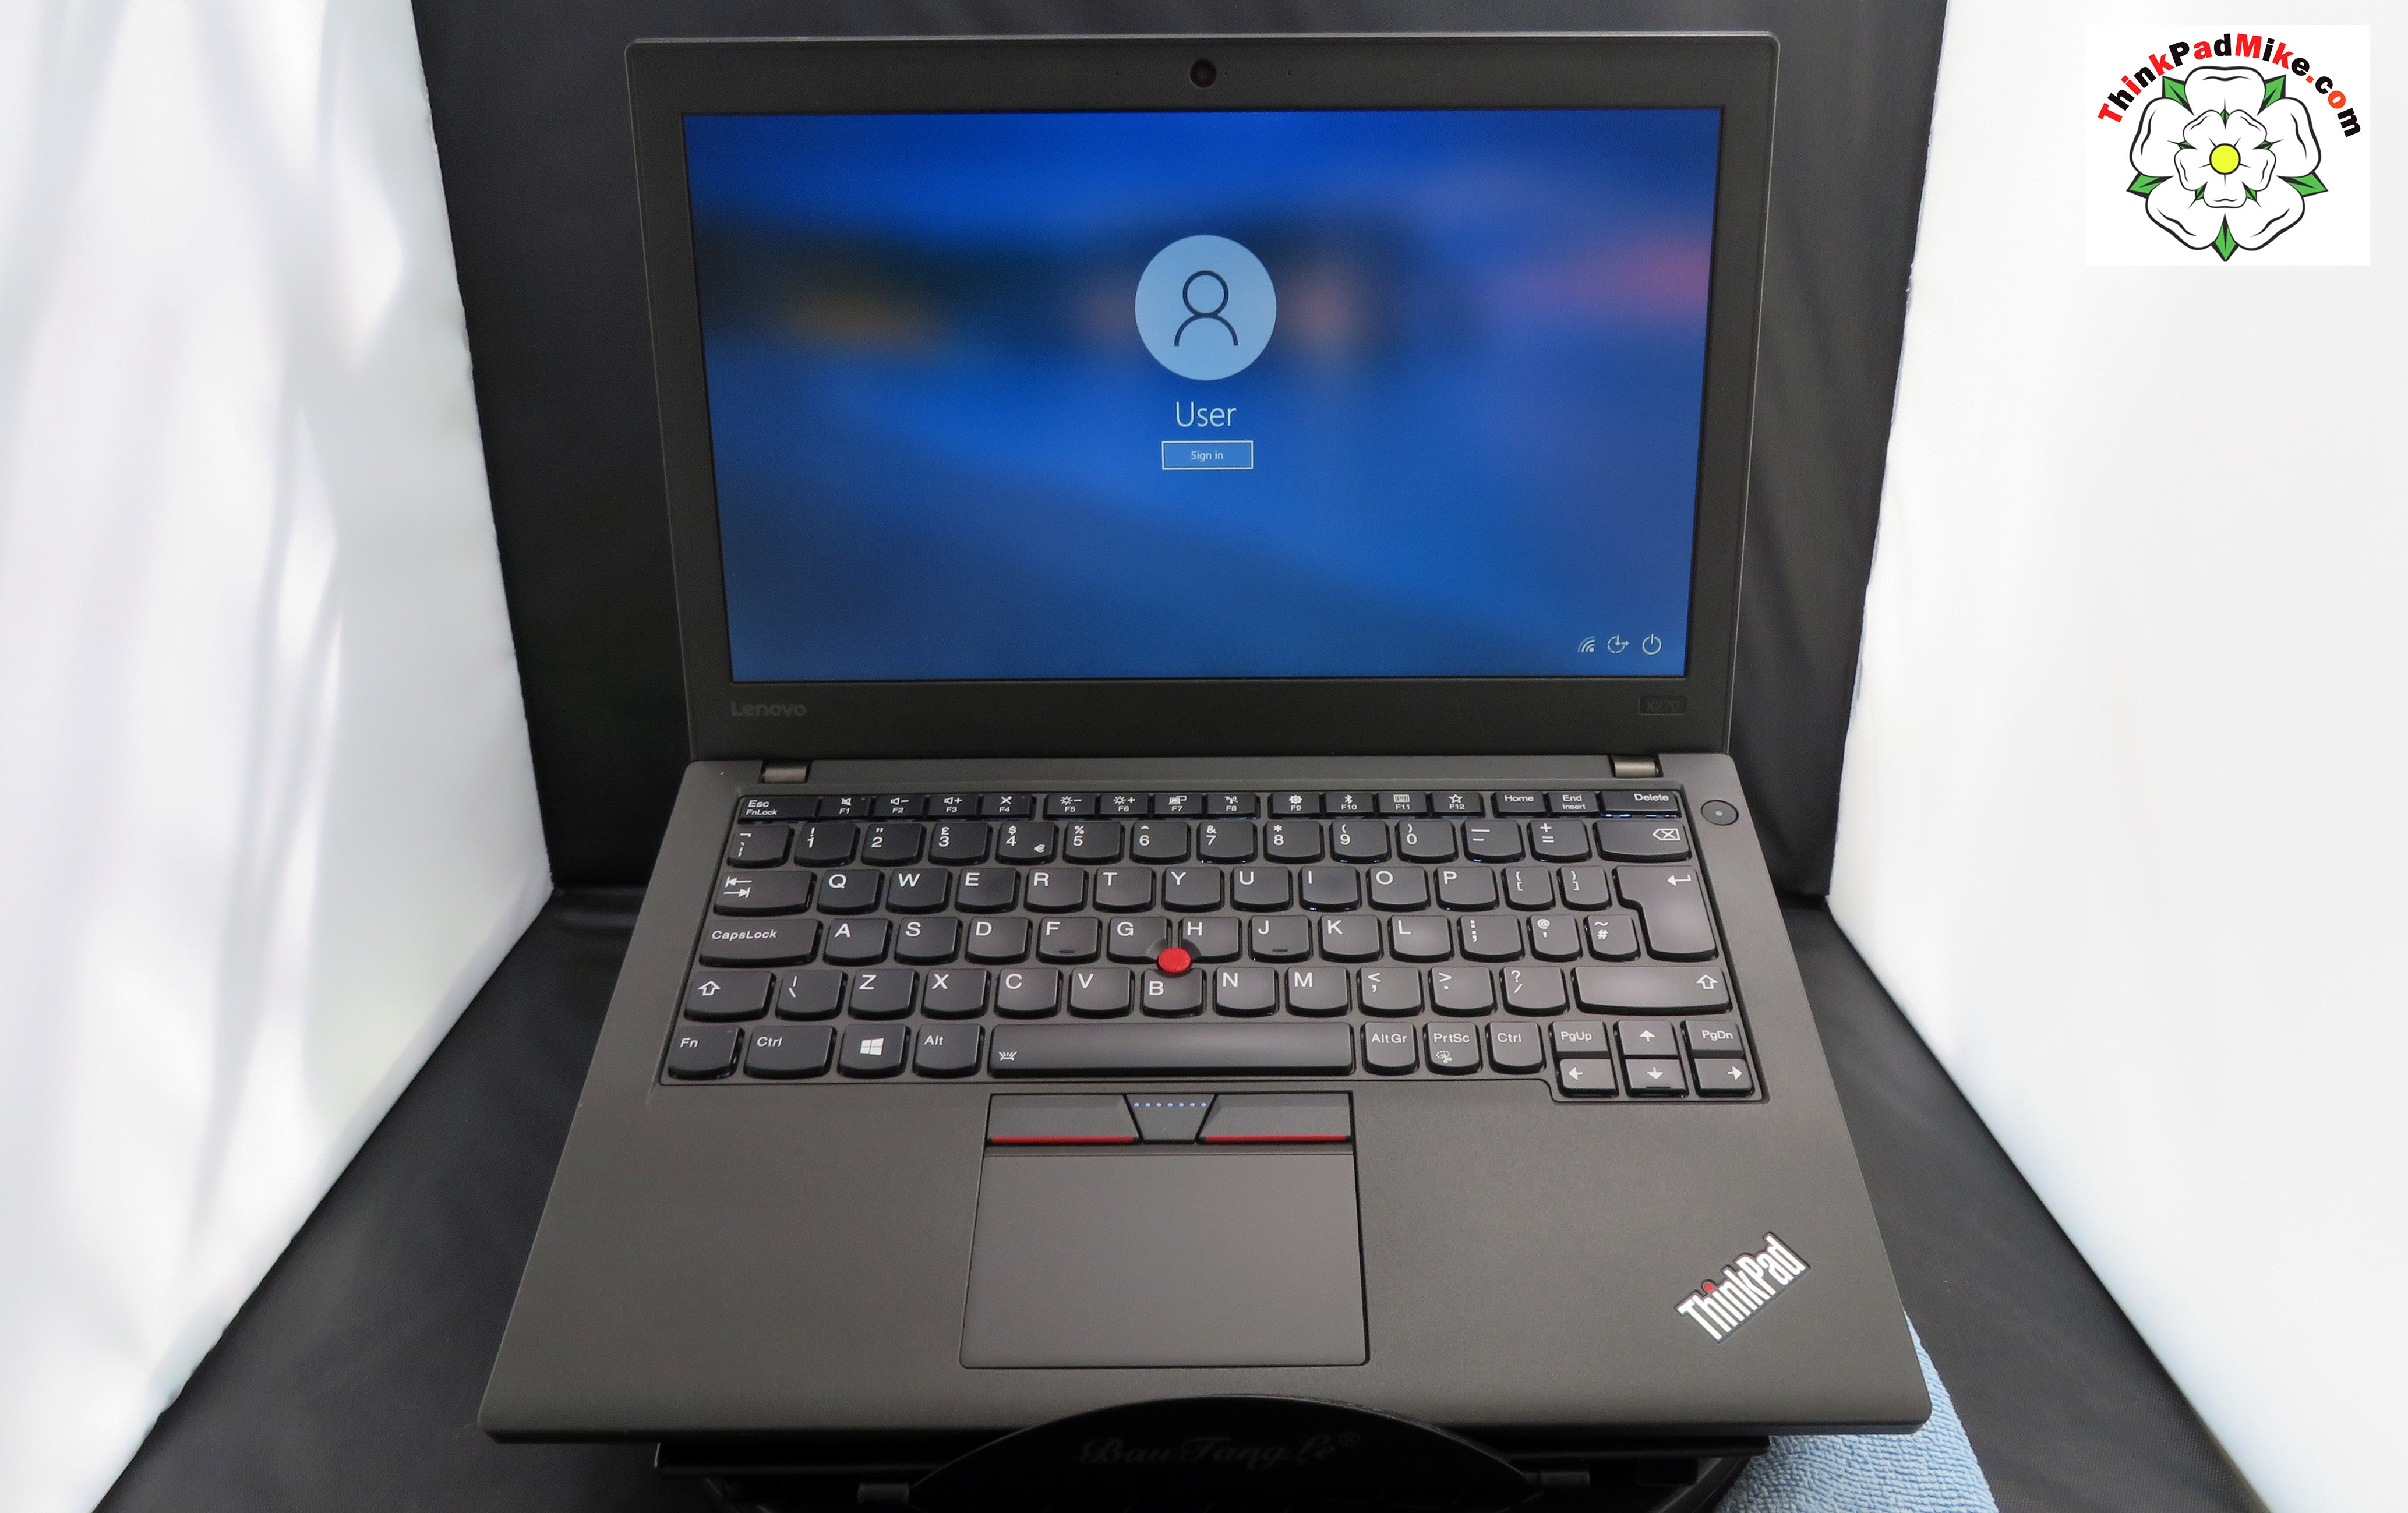 Lenovo ThinkPad x270 i5 6300U 2.4Ghz 8GB RAM 256GB SSD Backlit Keyboard  (586)